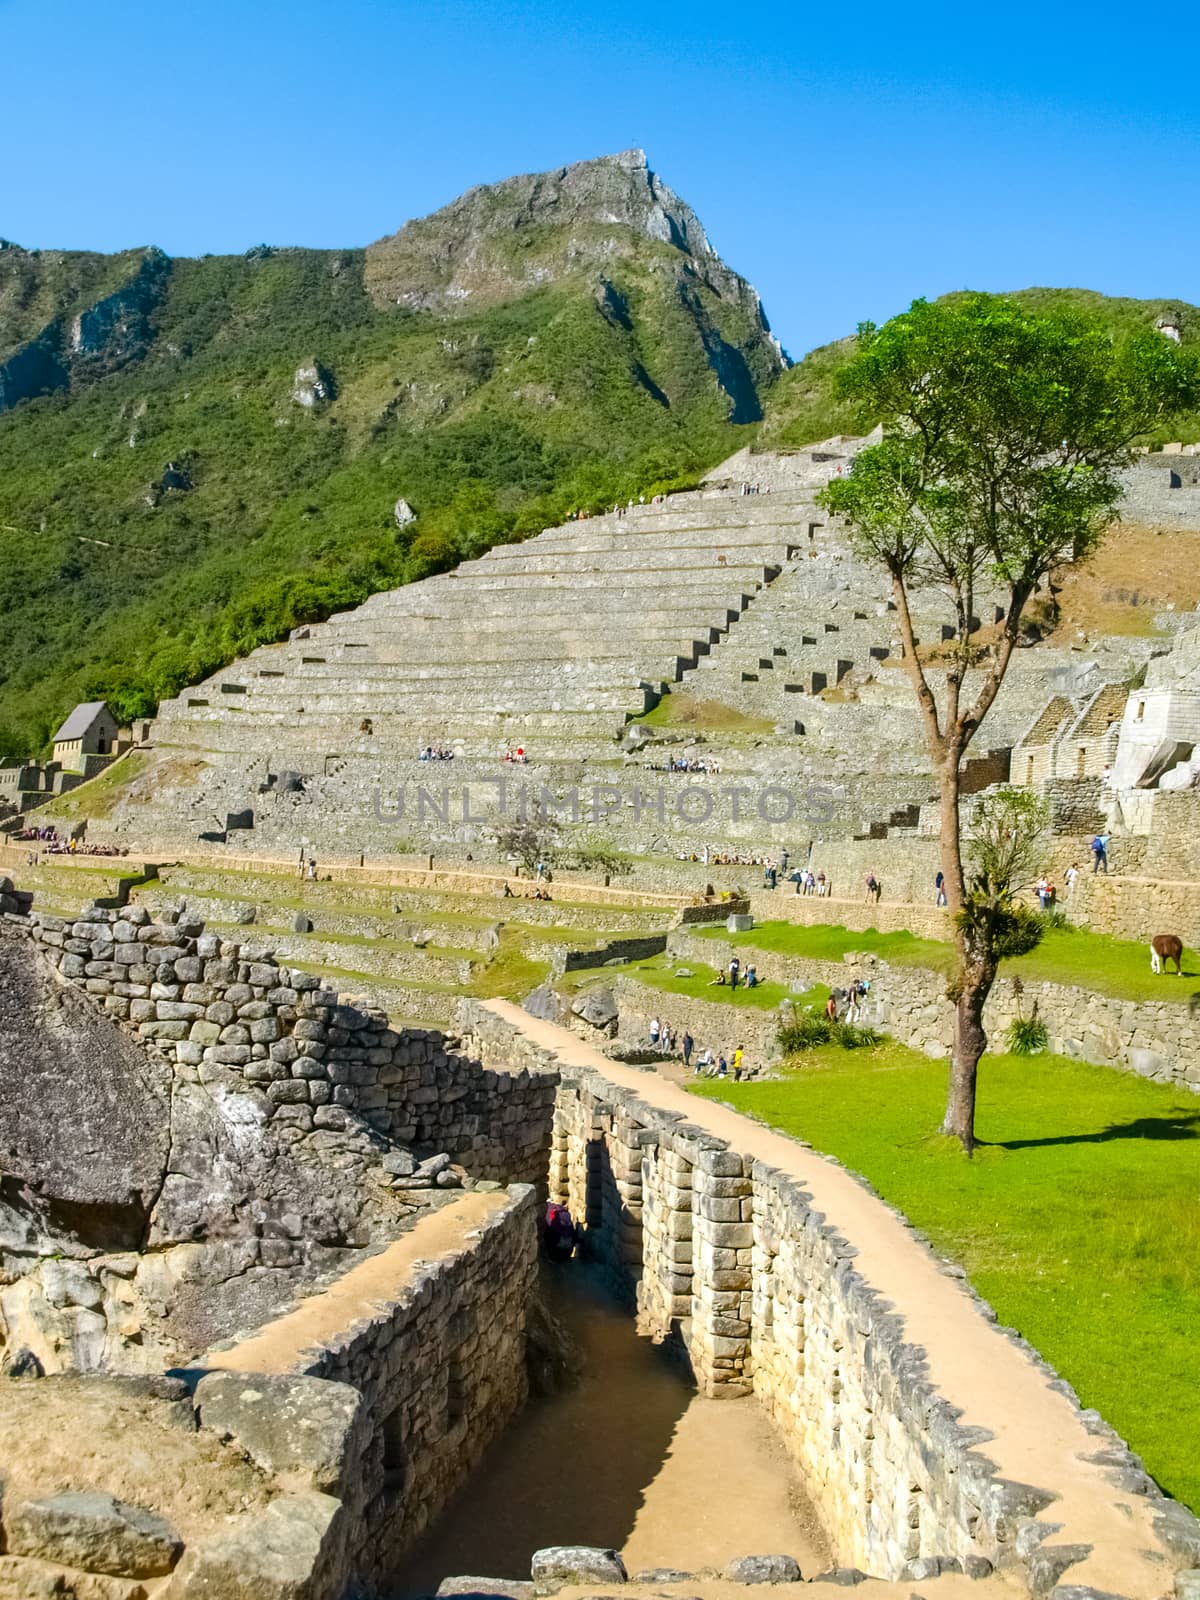 Terraces of Machu Picchu - Incan lost city in Peru, South America.